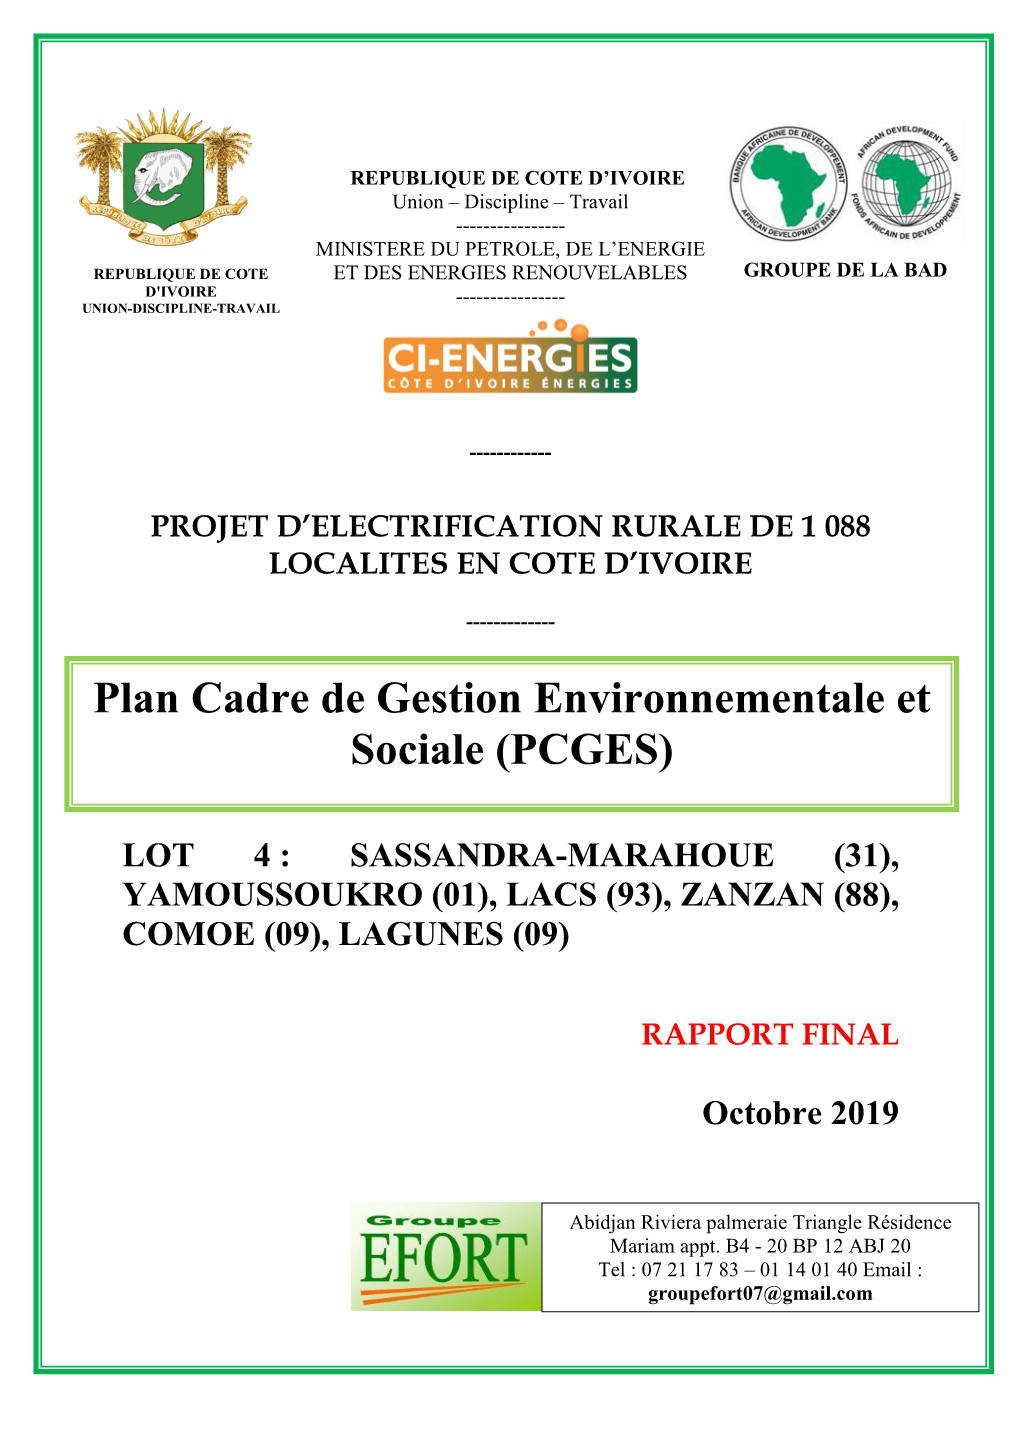 Plan Cadre De Gestion Environnementale Et Sociale (PCGES) Du Projet Electrification De 1088 Localités De La Côte D’Ivoire 3 5.6.2